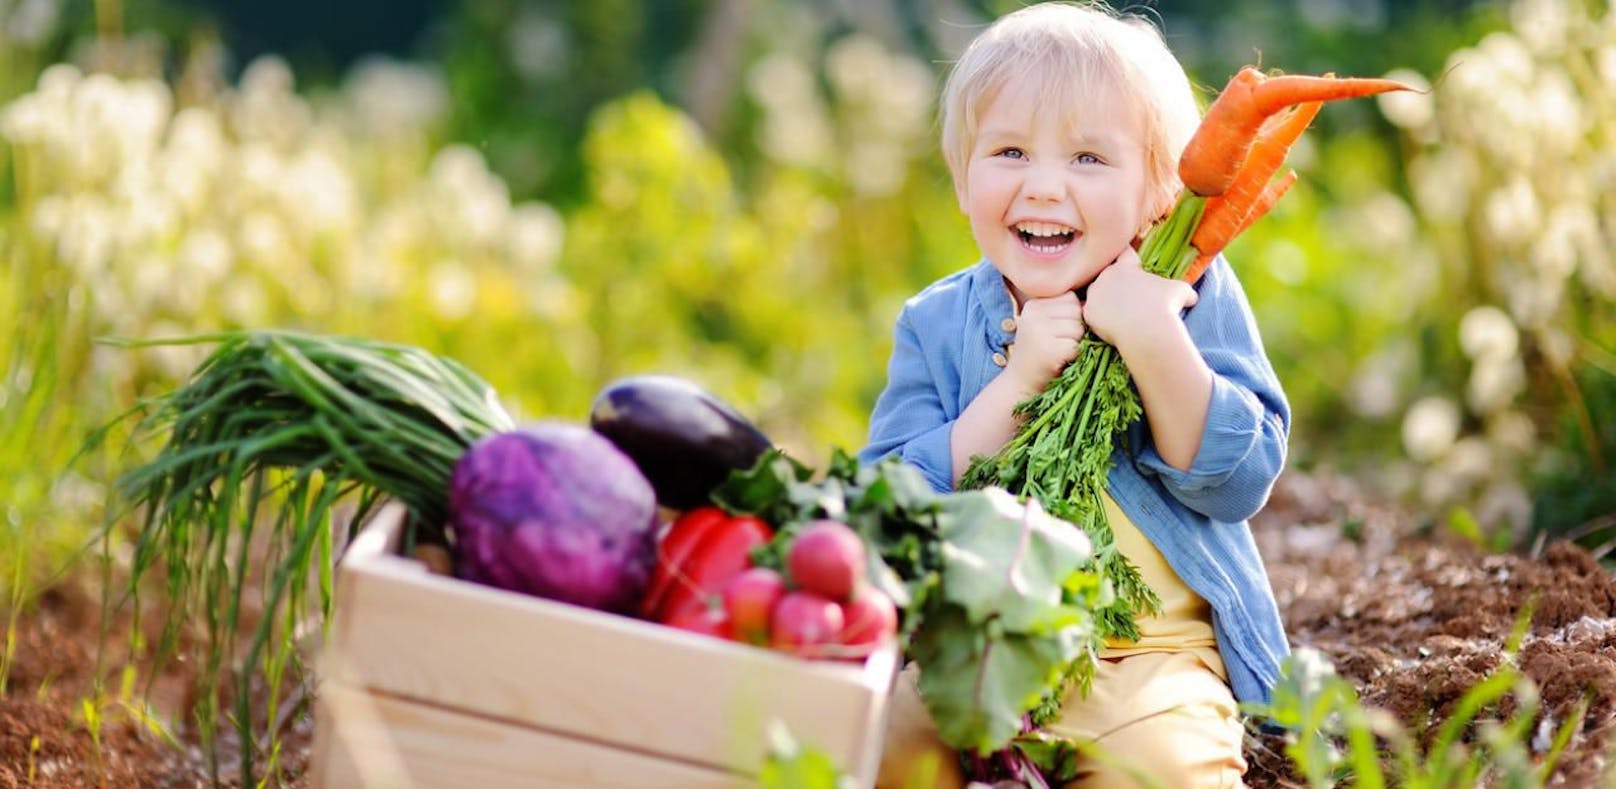 Vegane Ernährung liegt im Trend. Experten kritisieren die spezielle Ernährungsweise bei Kindern, weil sie rasch Mangelerscheinungen mit sich bringen kann.